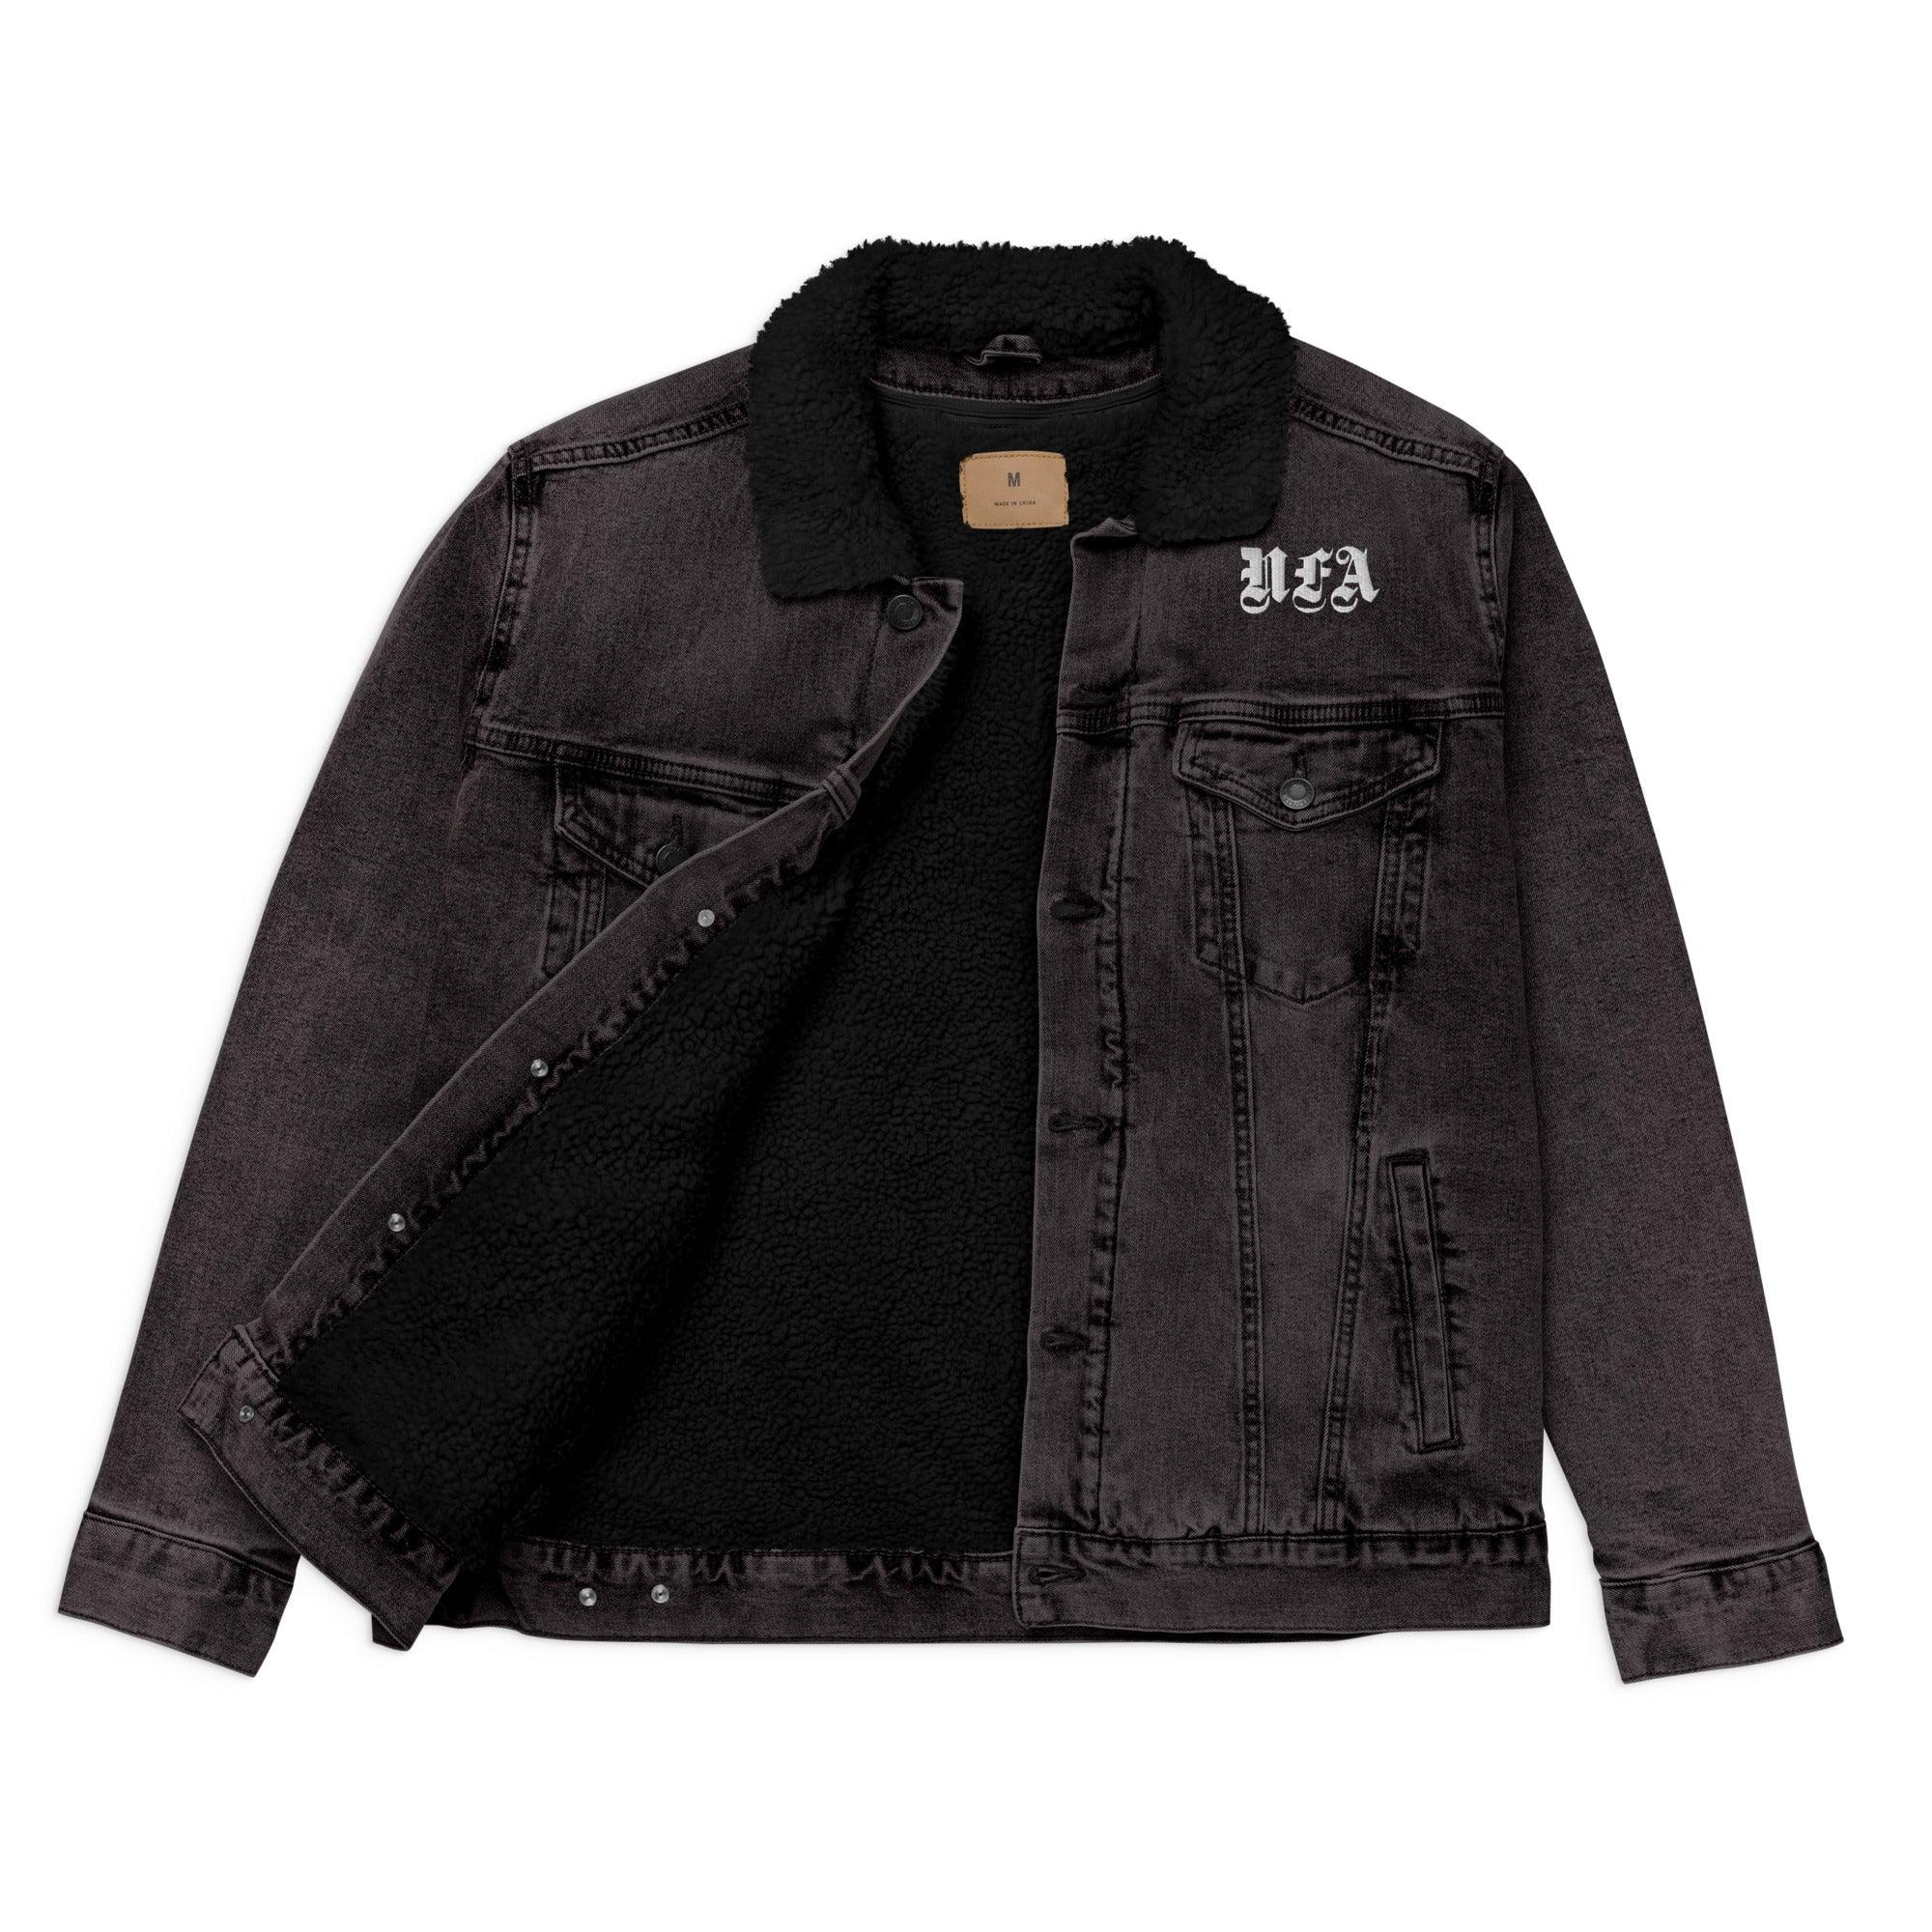 NFA Denim Sherpa Jacket - NO FIXED ABODE Punkrock Mens Luxury Streetwear UK